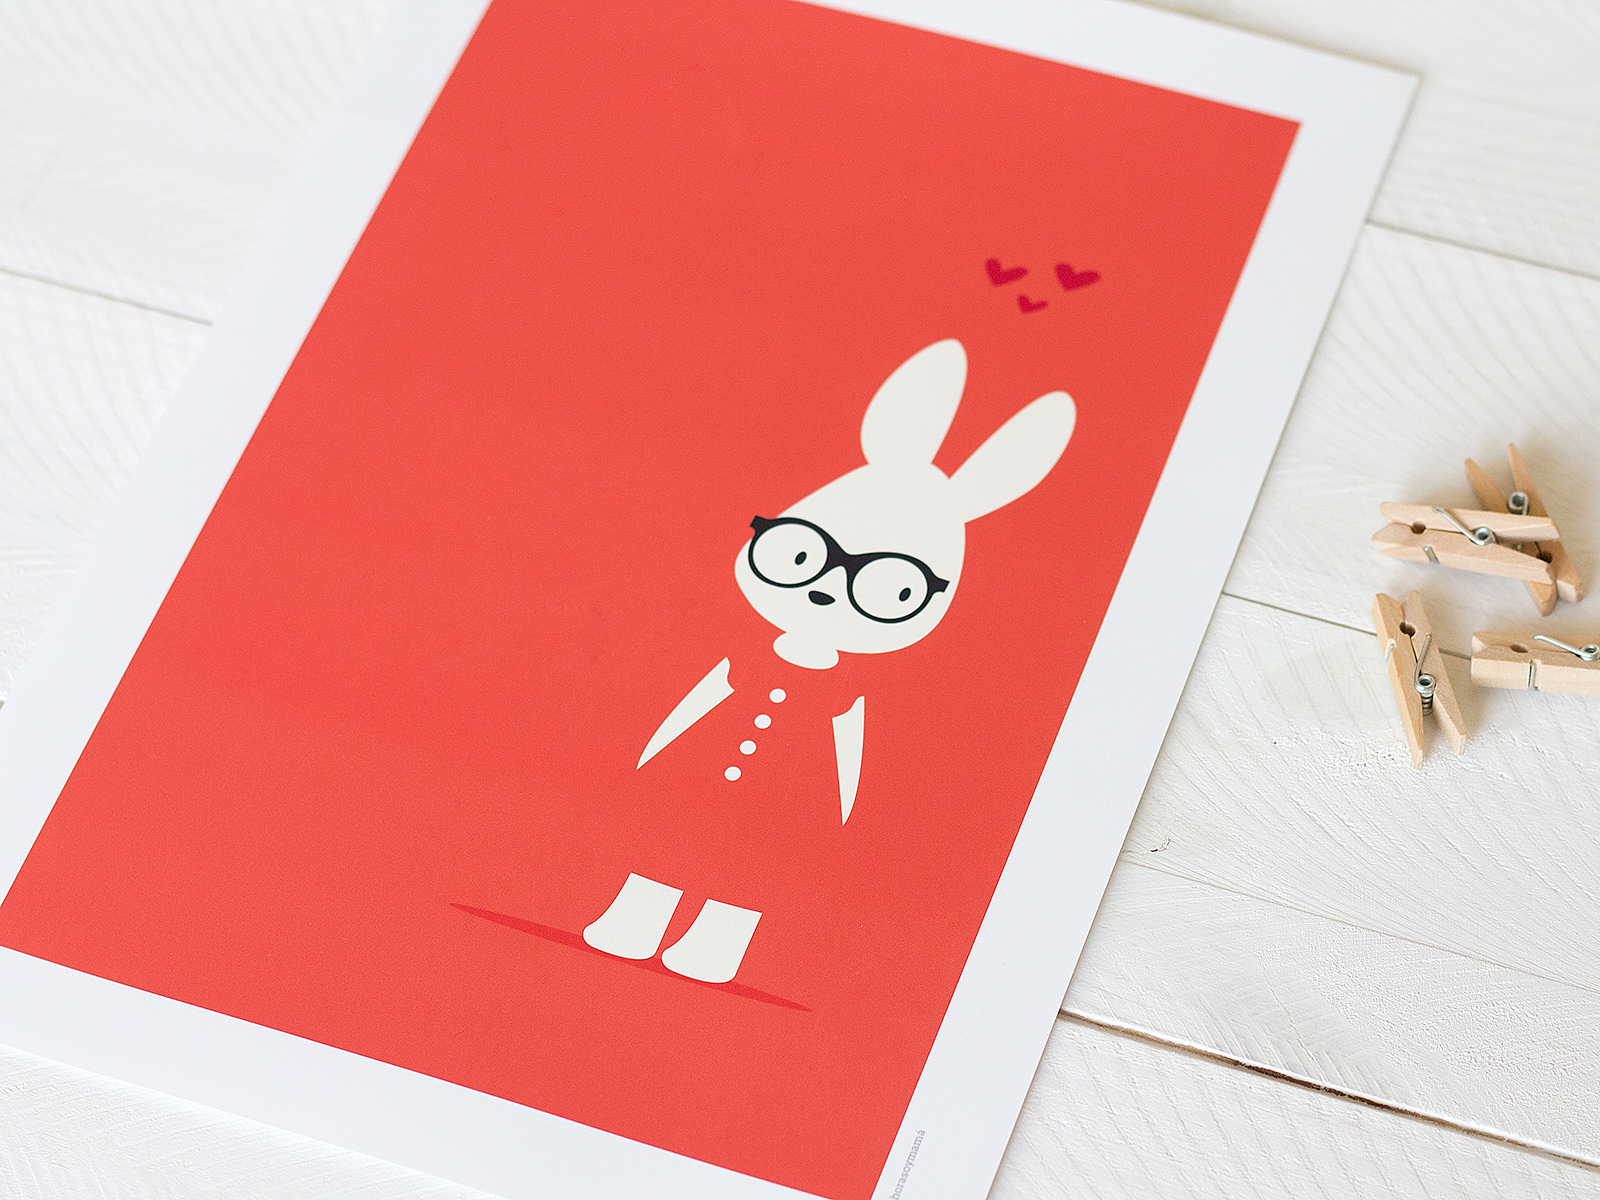 lamina conejo rojo 1 - Lámina conejo con gafas, color rojo